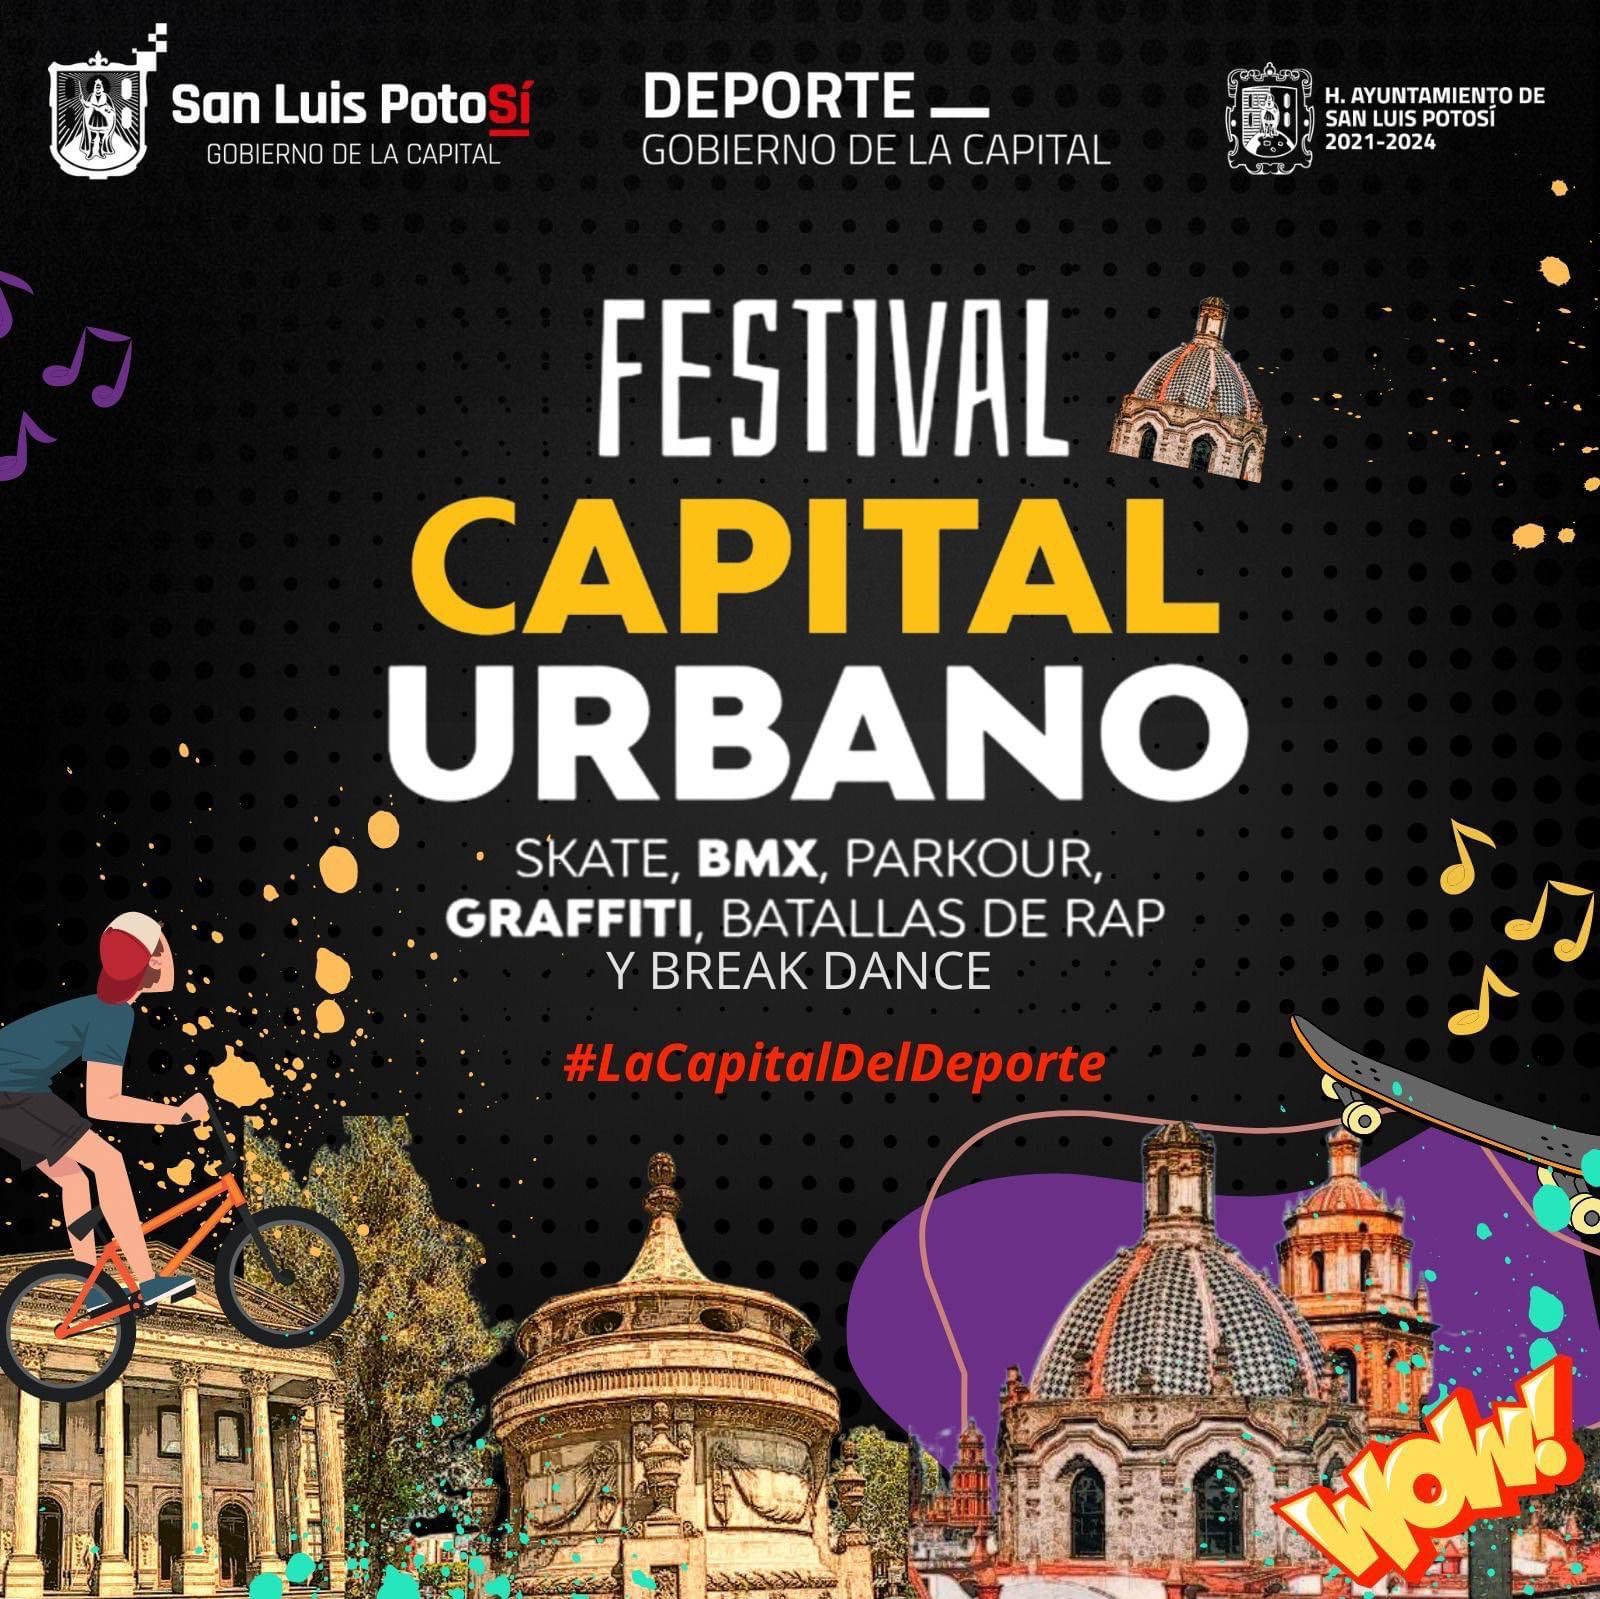 Con magno concierto gratuito, la máxima figura del rap en México estará presente en la Capital Potosina.